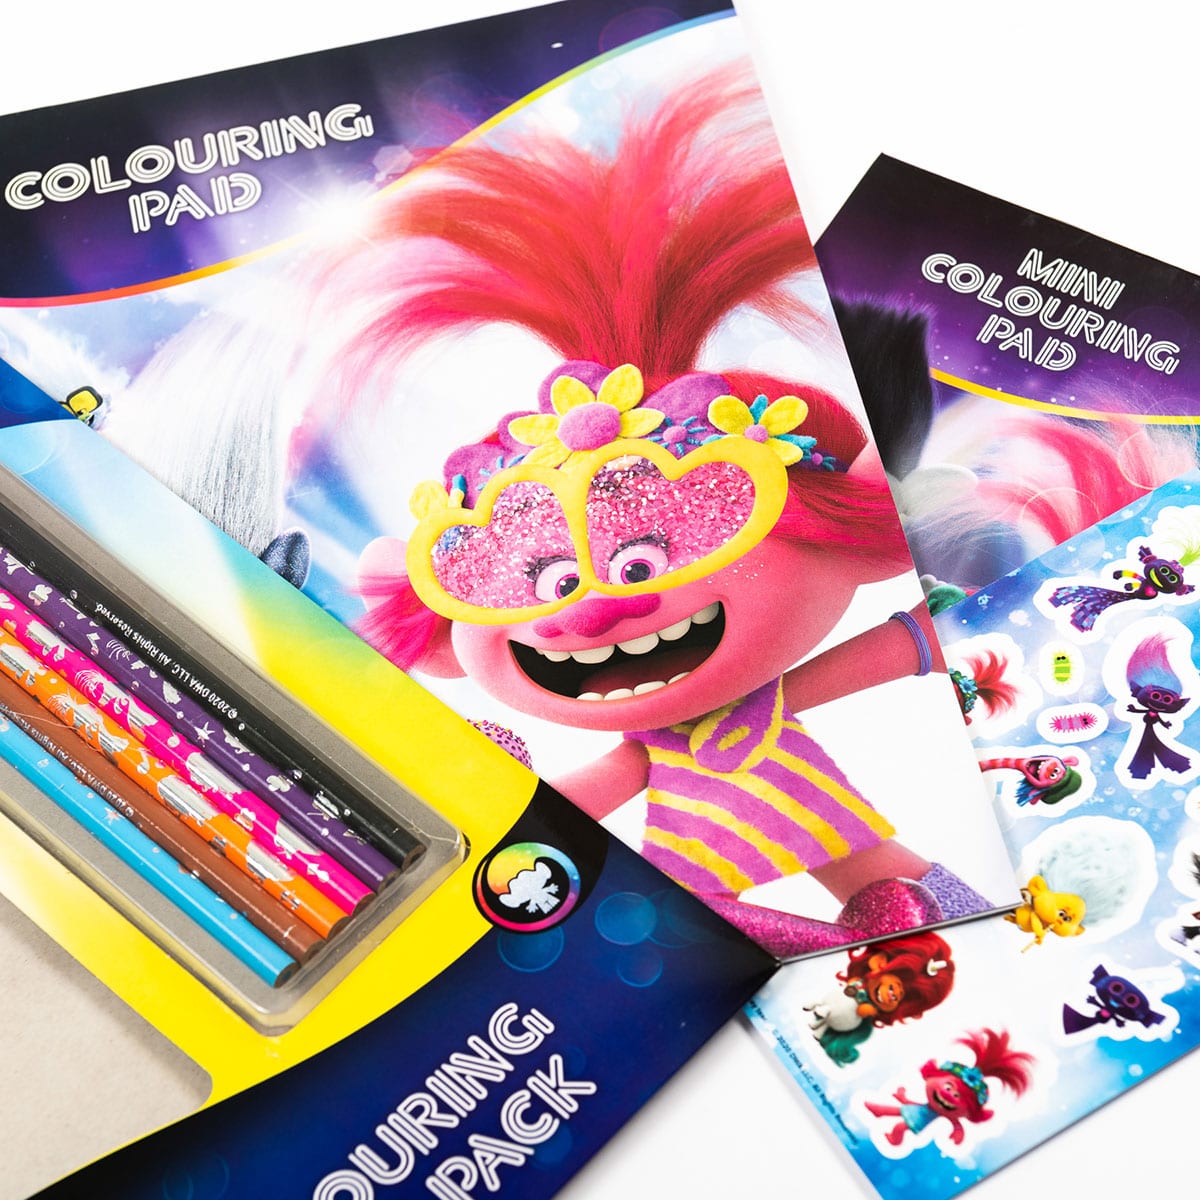 Trolls 2 Colouring Play Pack - Set de colorat cu autocolante și creioane colorate (3184/TRCPP)